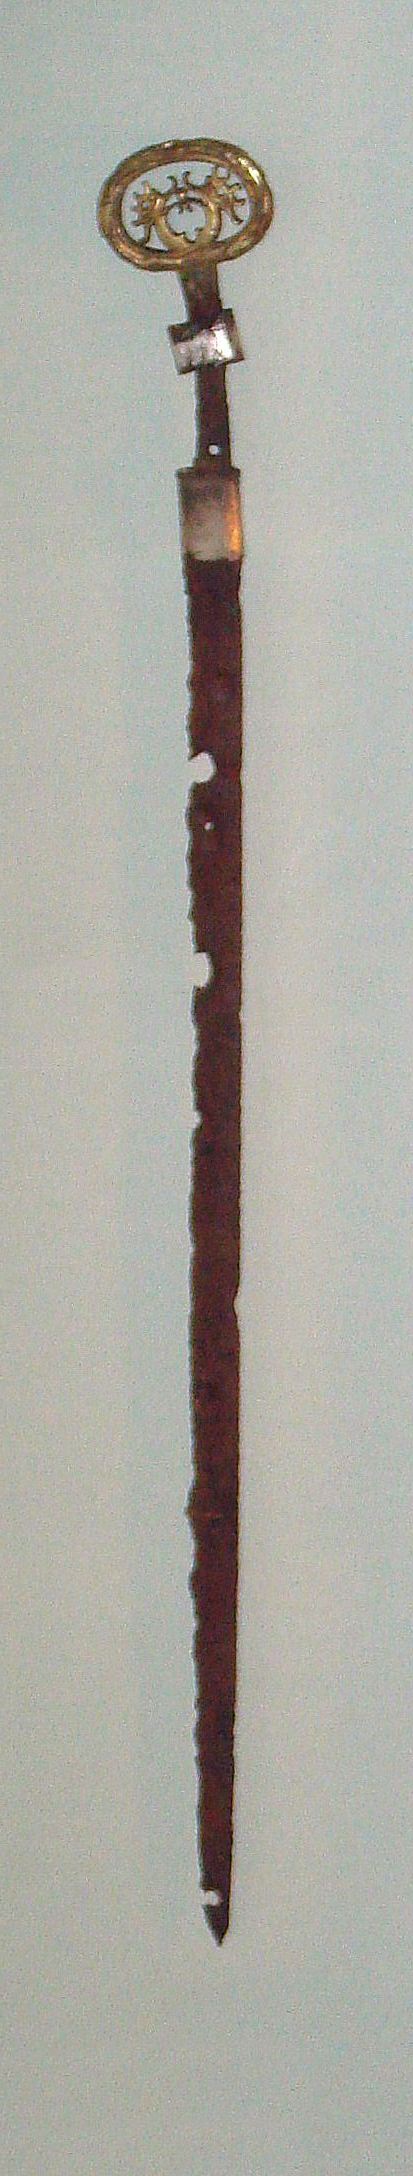 Северокитайский меч (палаш) 6 века